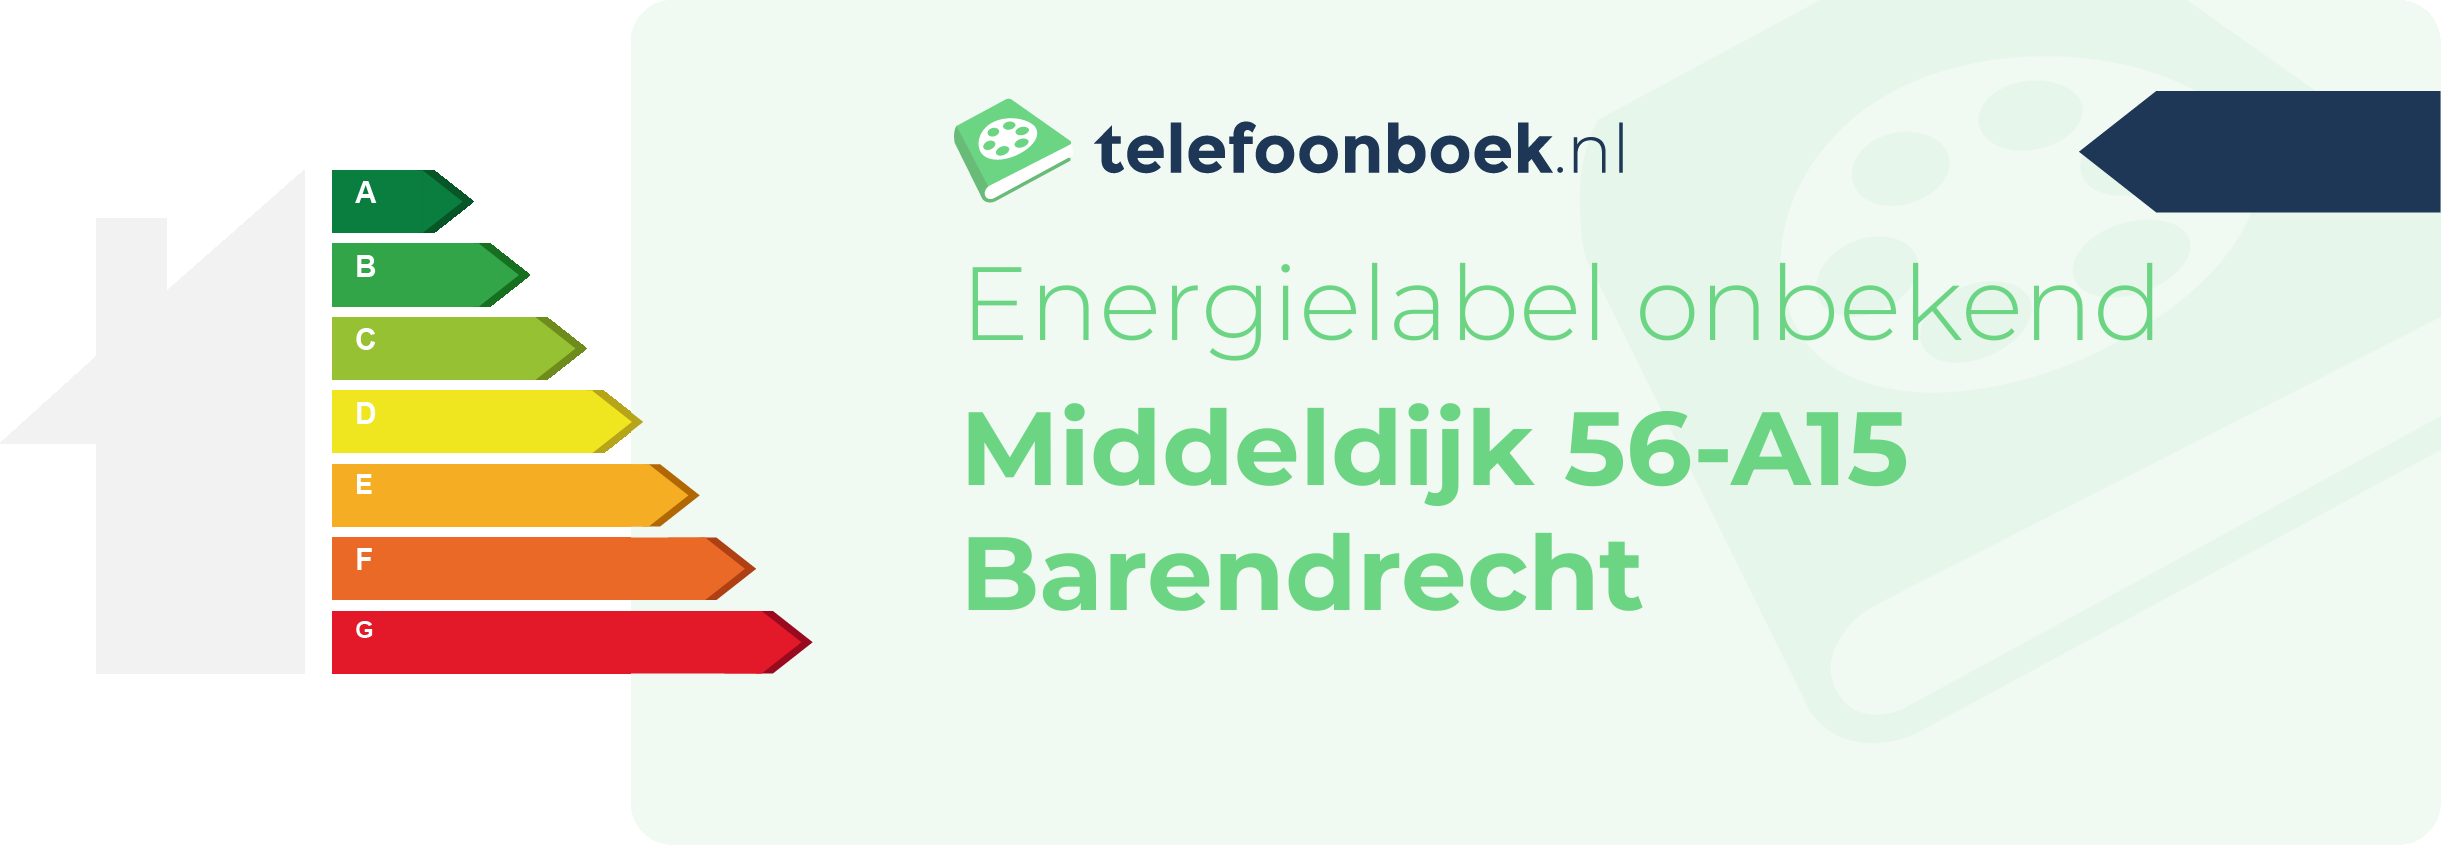 Energielabel Middeldijk 56-A15 Barendrecht